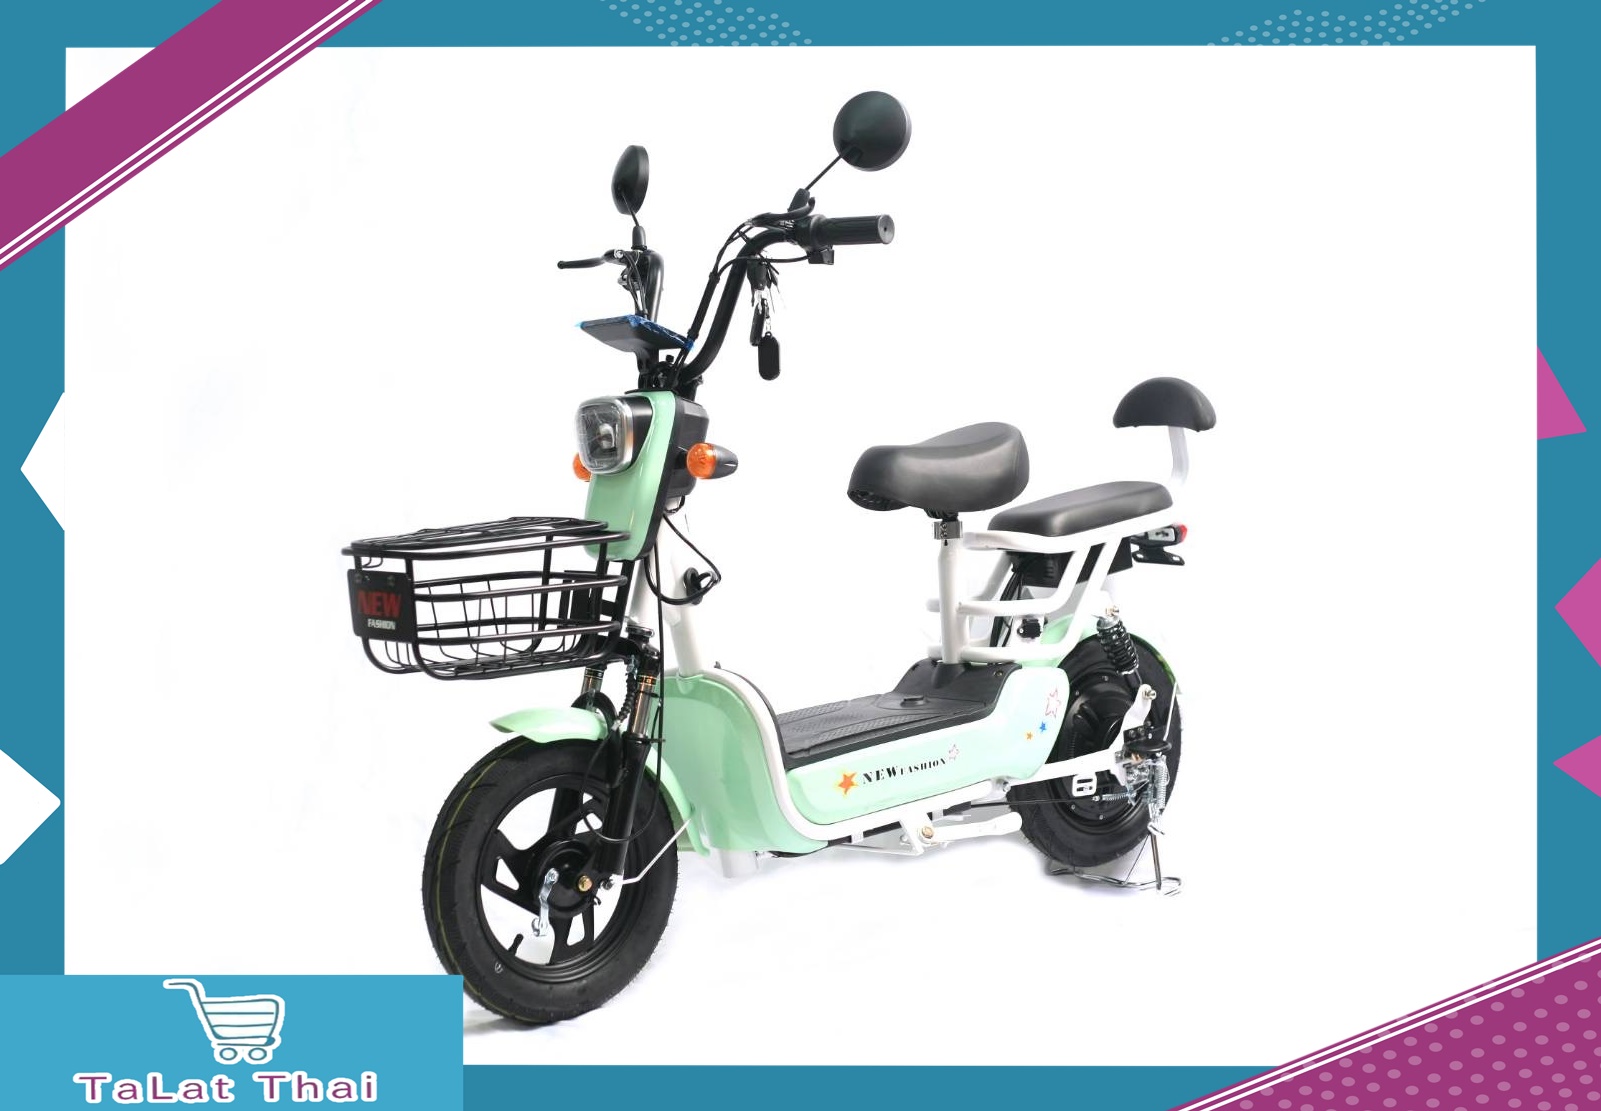 รถจักรยานไฟฟ้า จักรยานไฟฟ้า2021จักรยานไฟฟ้า electric bike สกู๊ตเตอร์ไฟฟ้า e-scooter ขับขี่ง่ายสบาย แบบ 2 ที่นั่งTaLat Thai รุ่นU2015